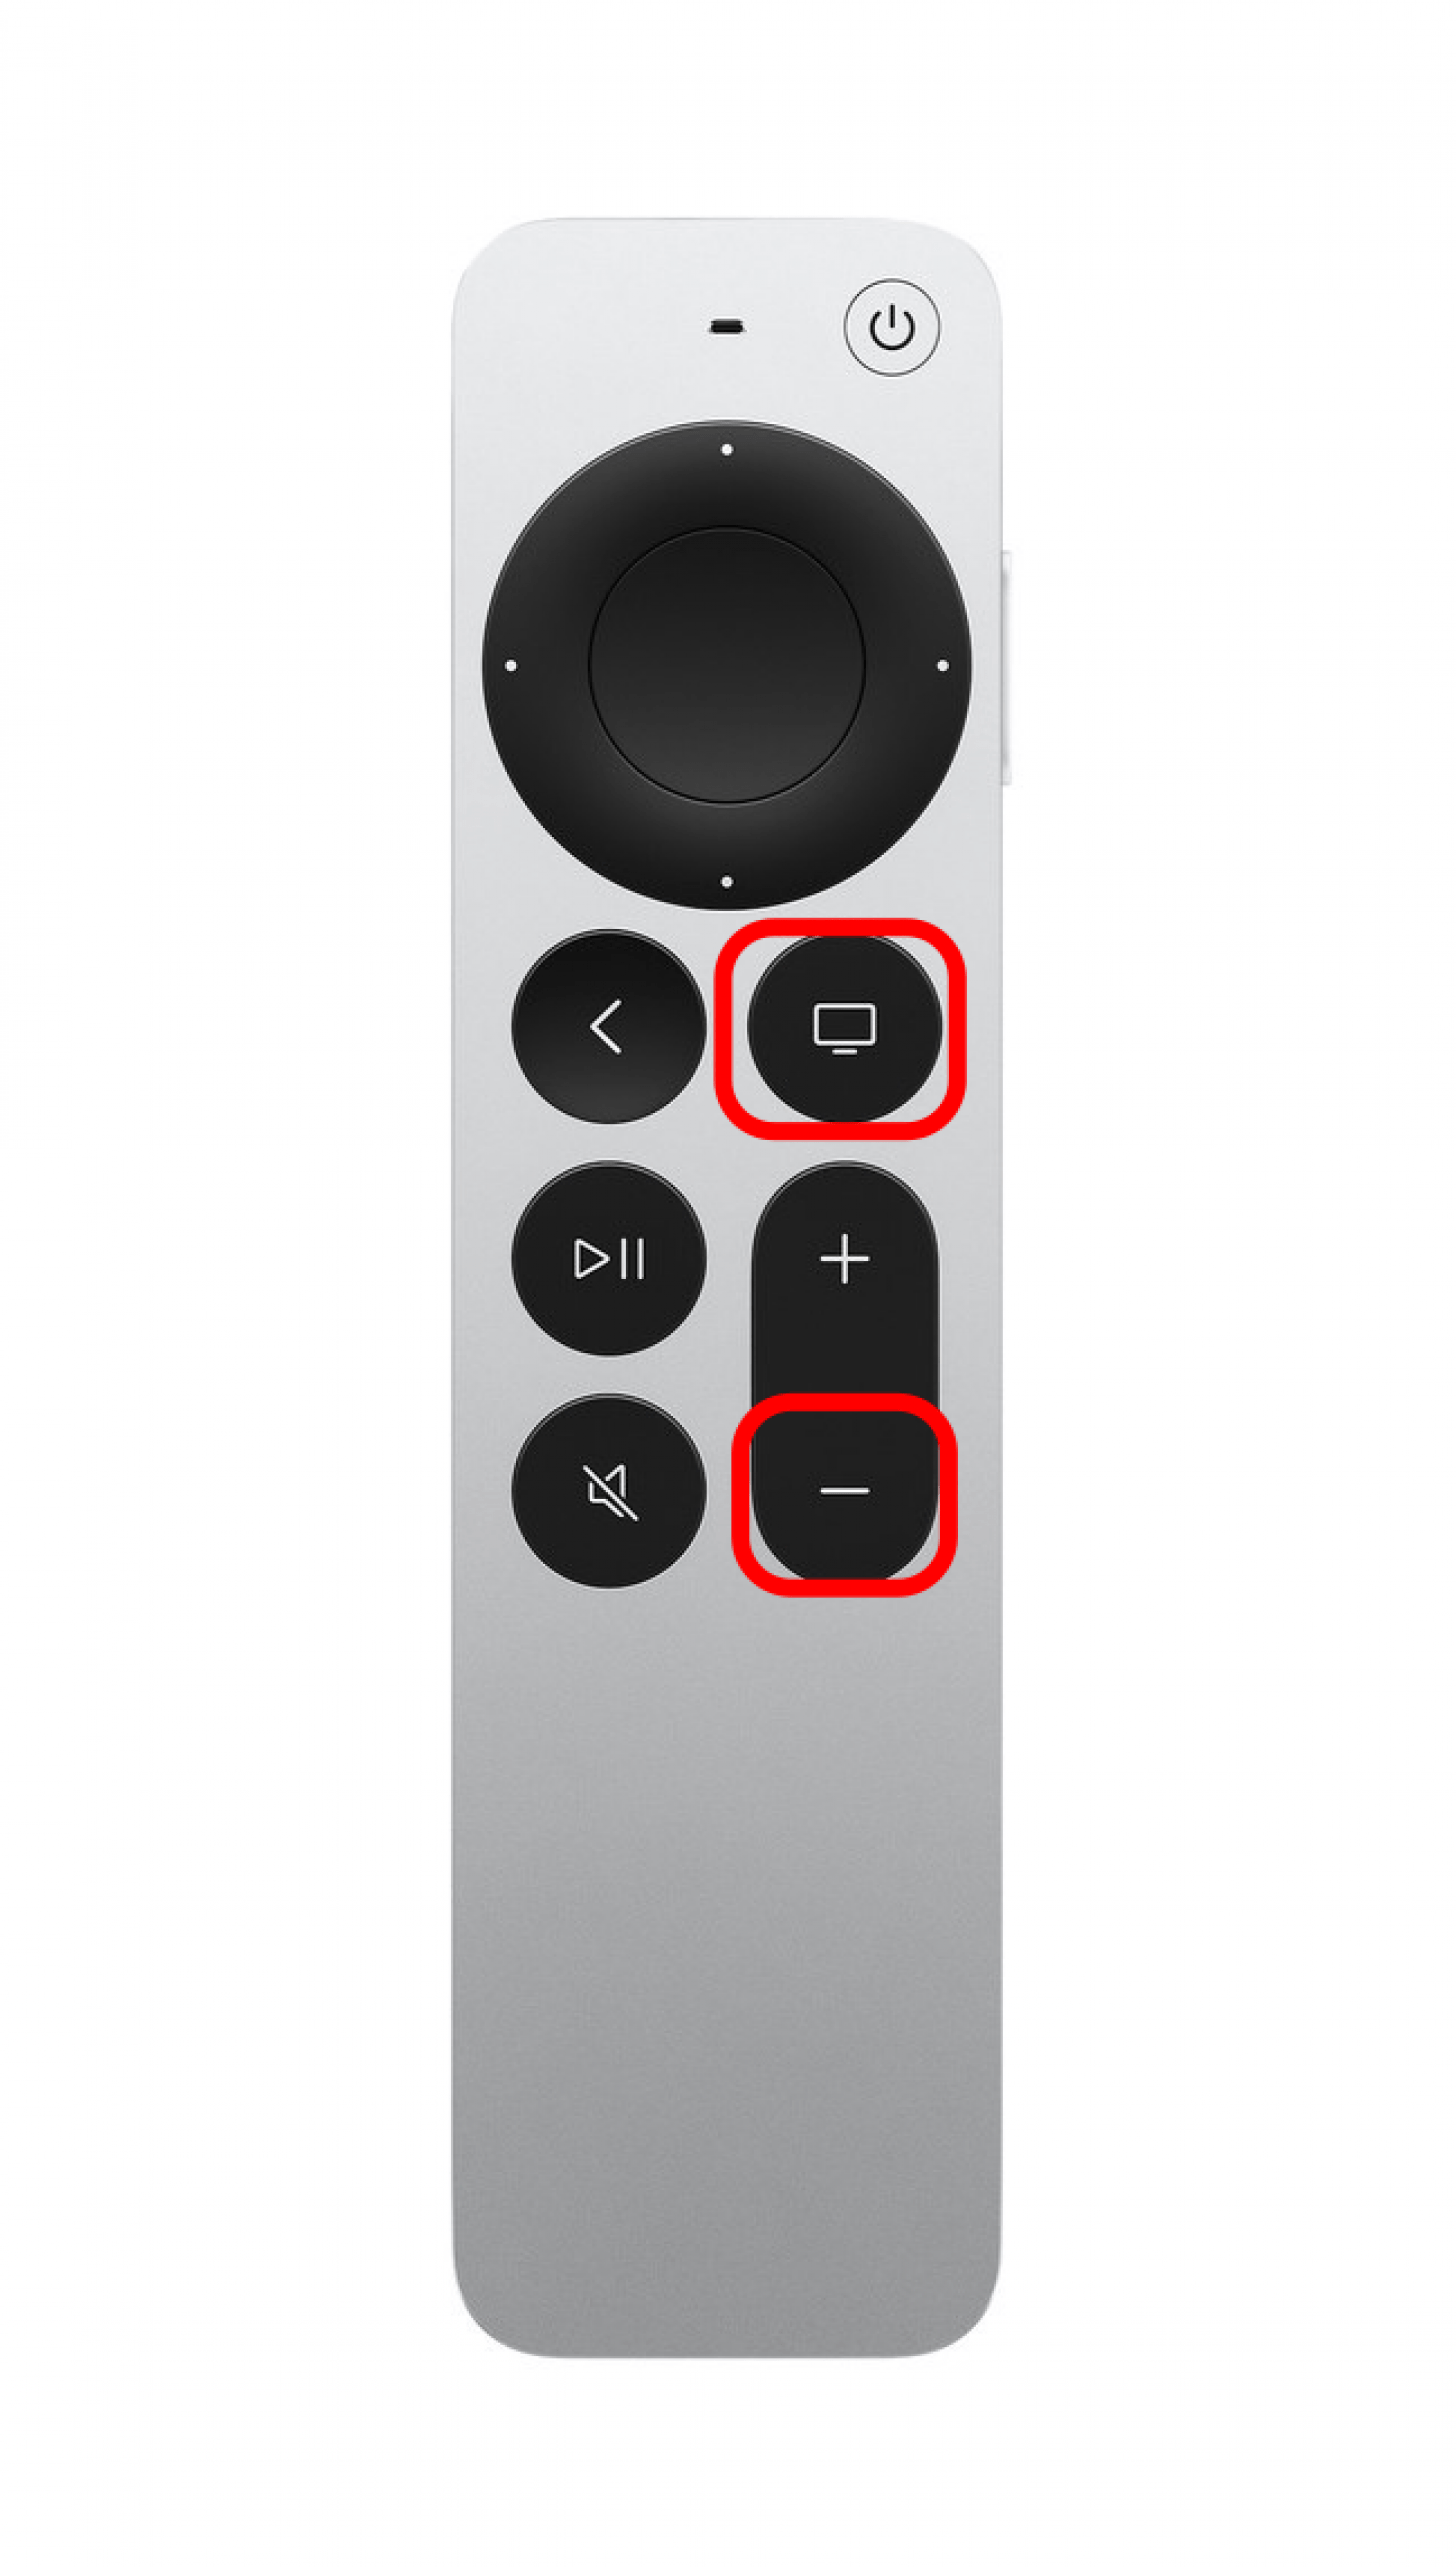 Mantenga presionados los botones TV y subir volumen simultáneamente durante al menos cinco segundos.